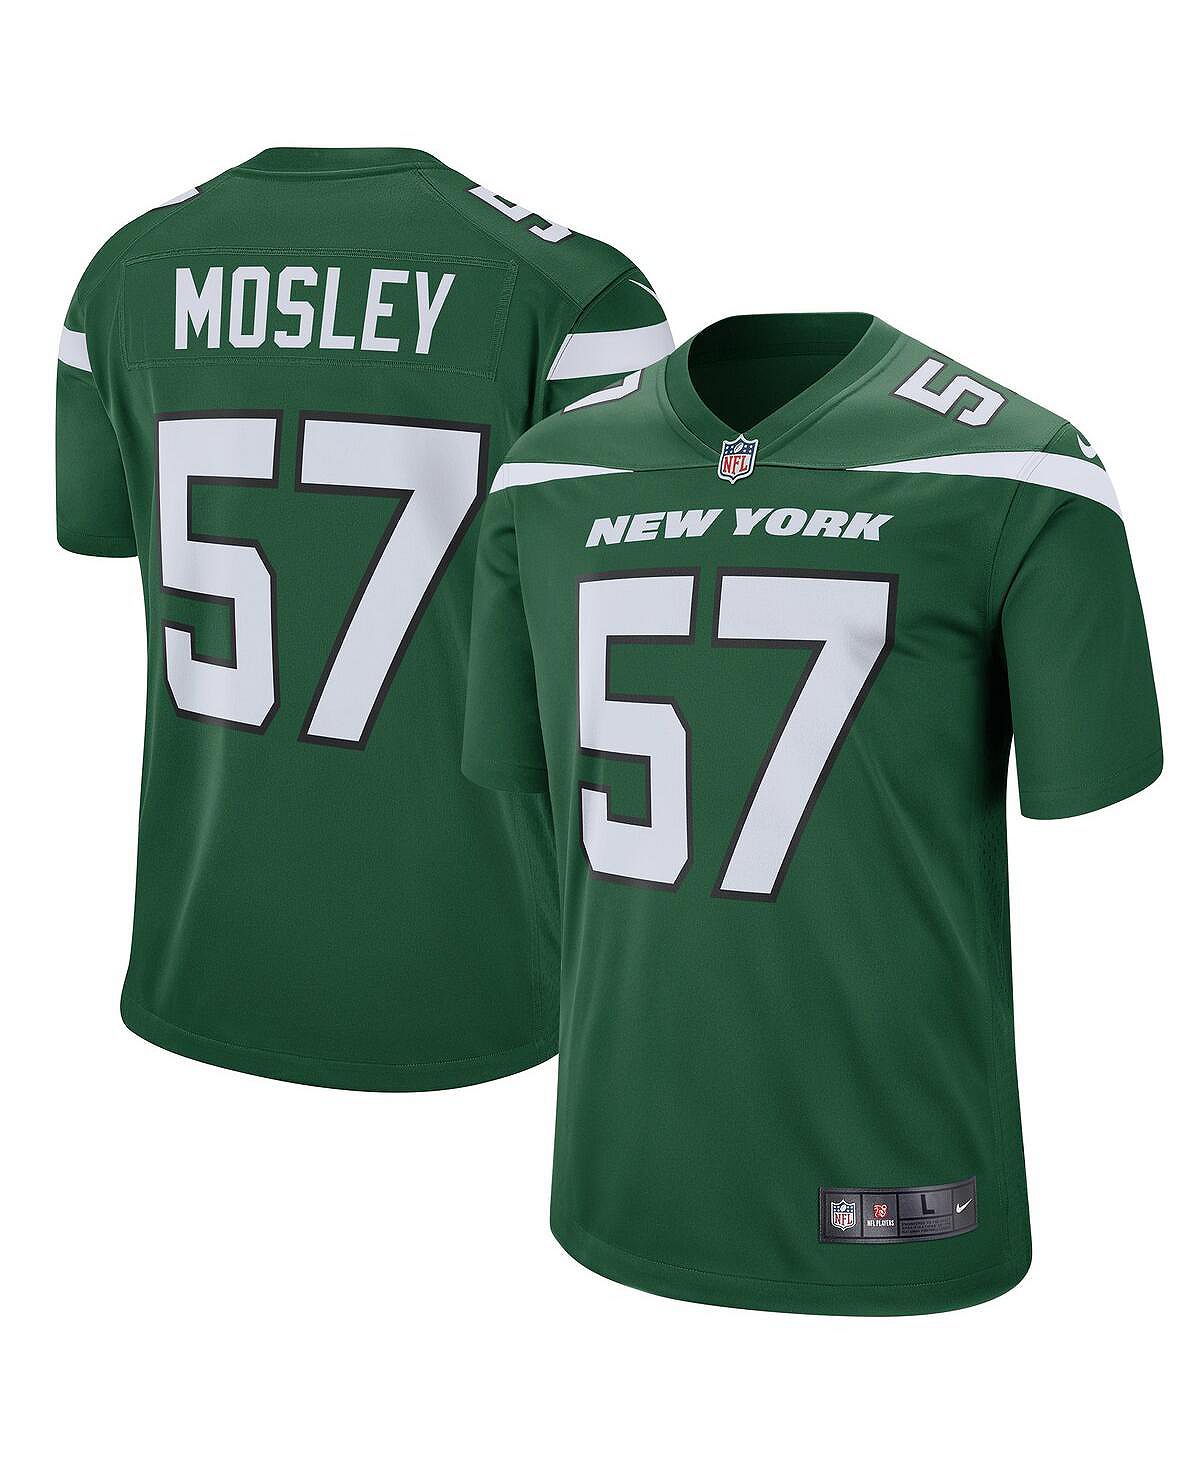 Мужская футболка cj mosley gotham green new york jets game jersey Nike, зеленый new york style